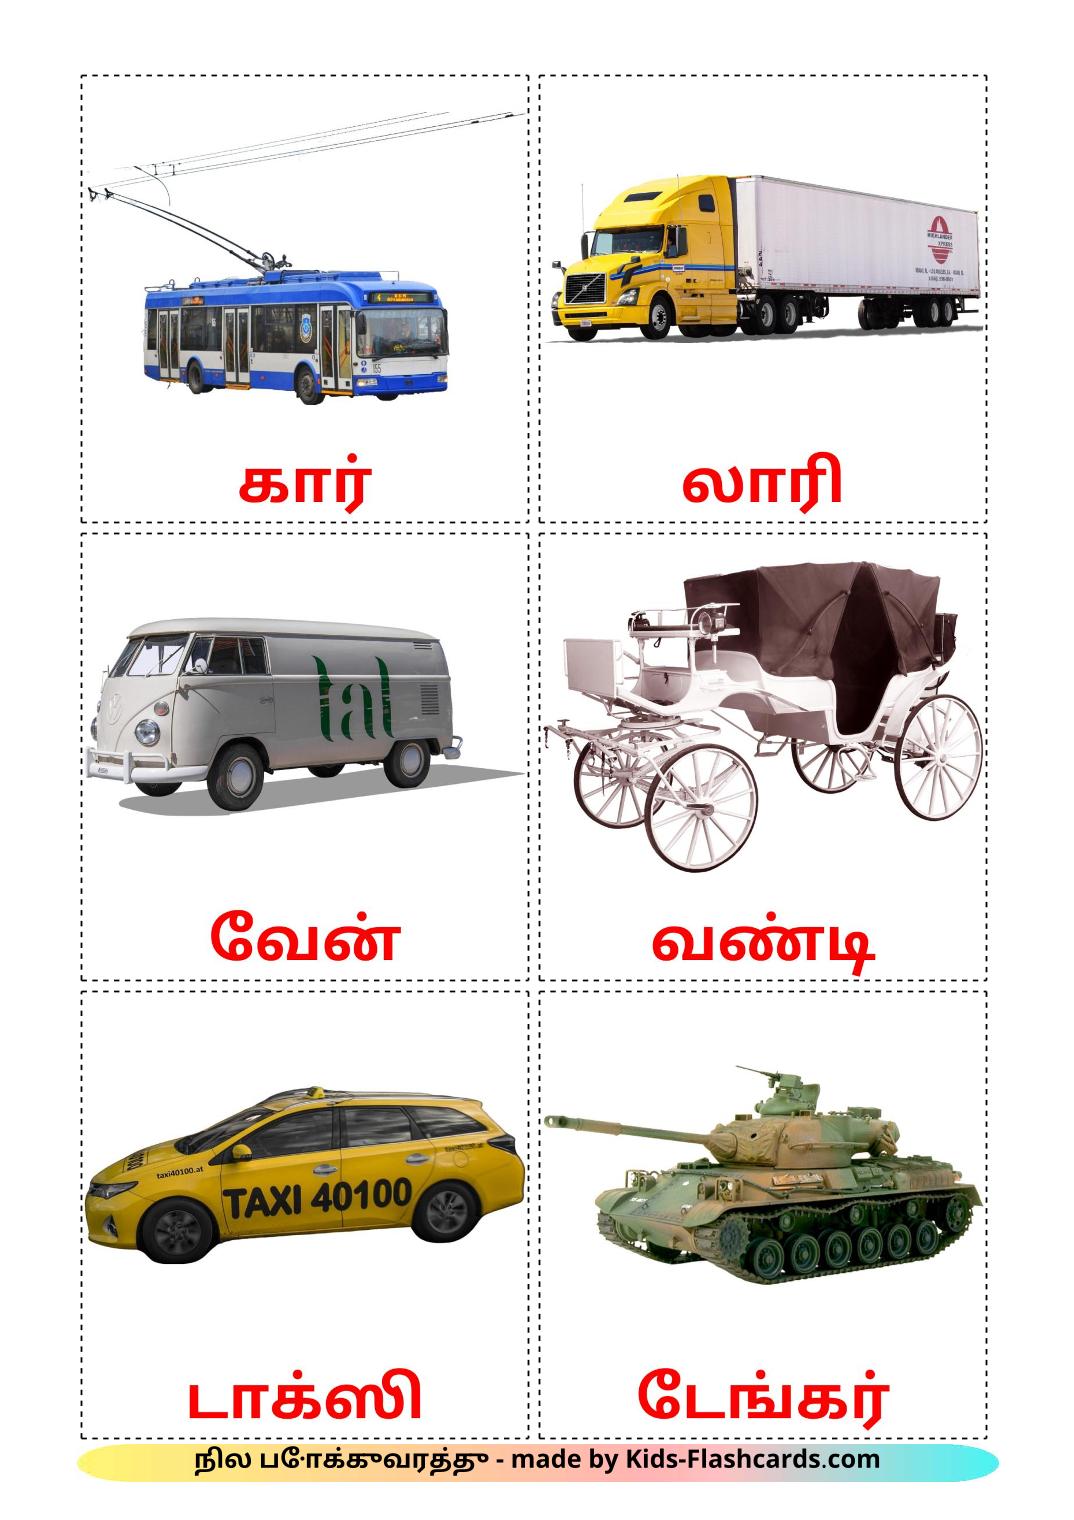 Наземный транспорт - 28 Карточек Домана на тамильском